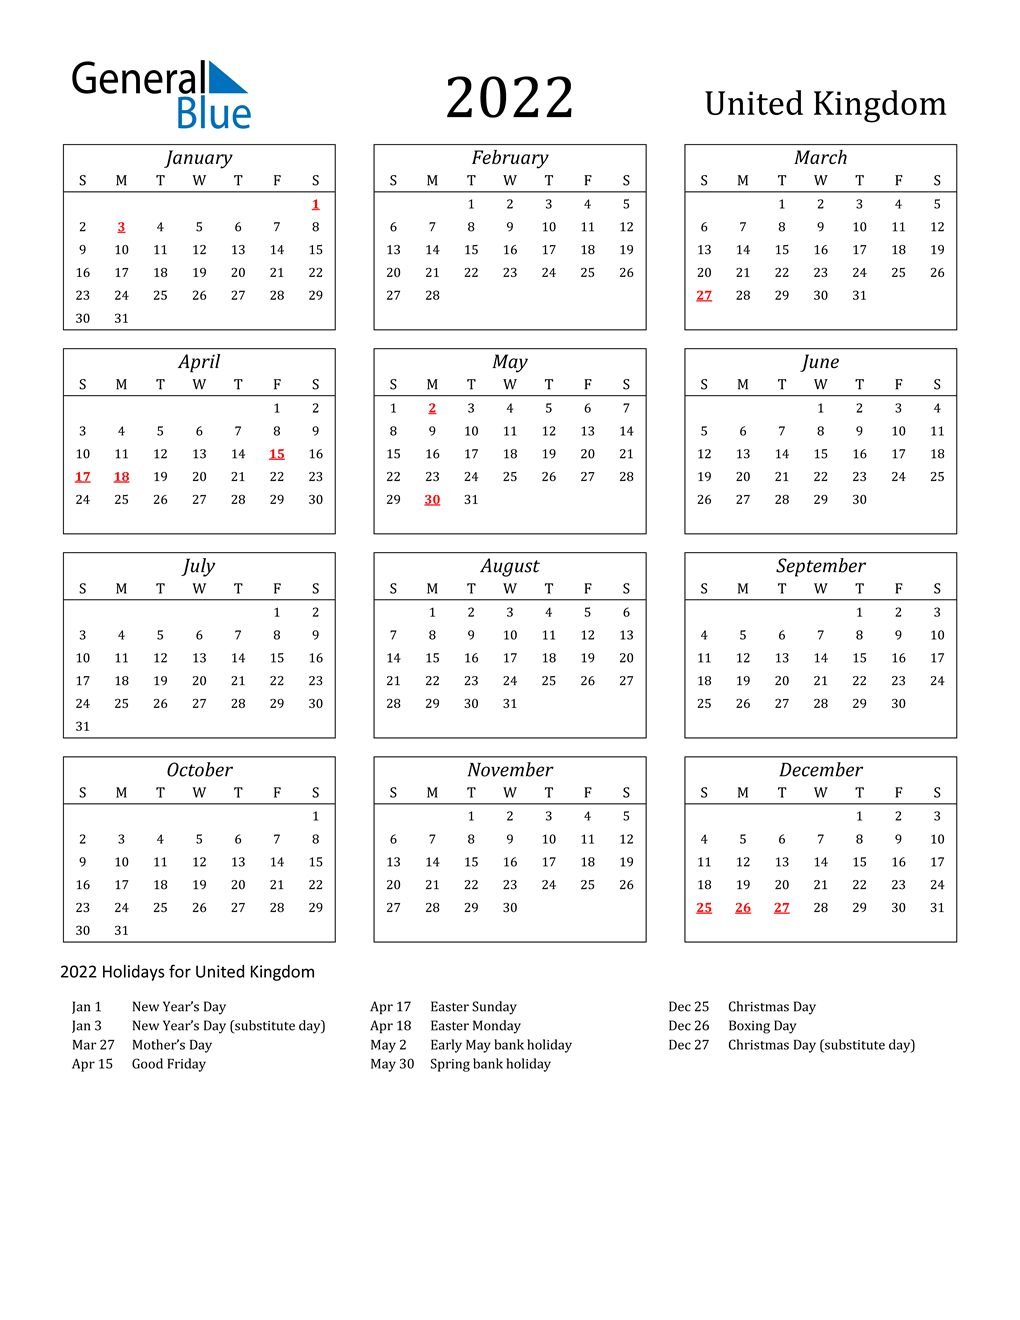 20 United Kingdom Calendar with Holidays